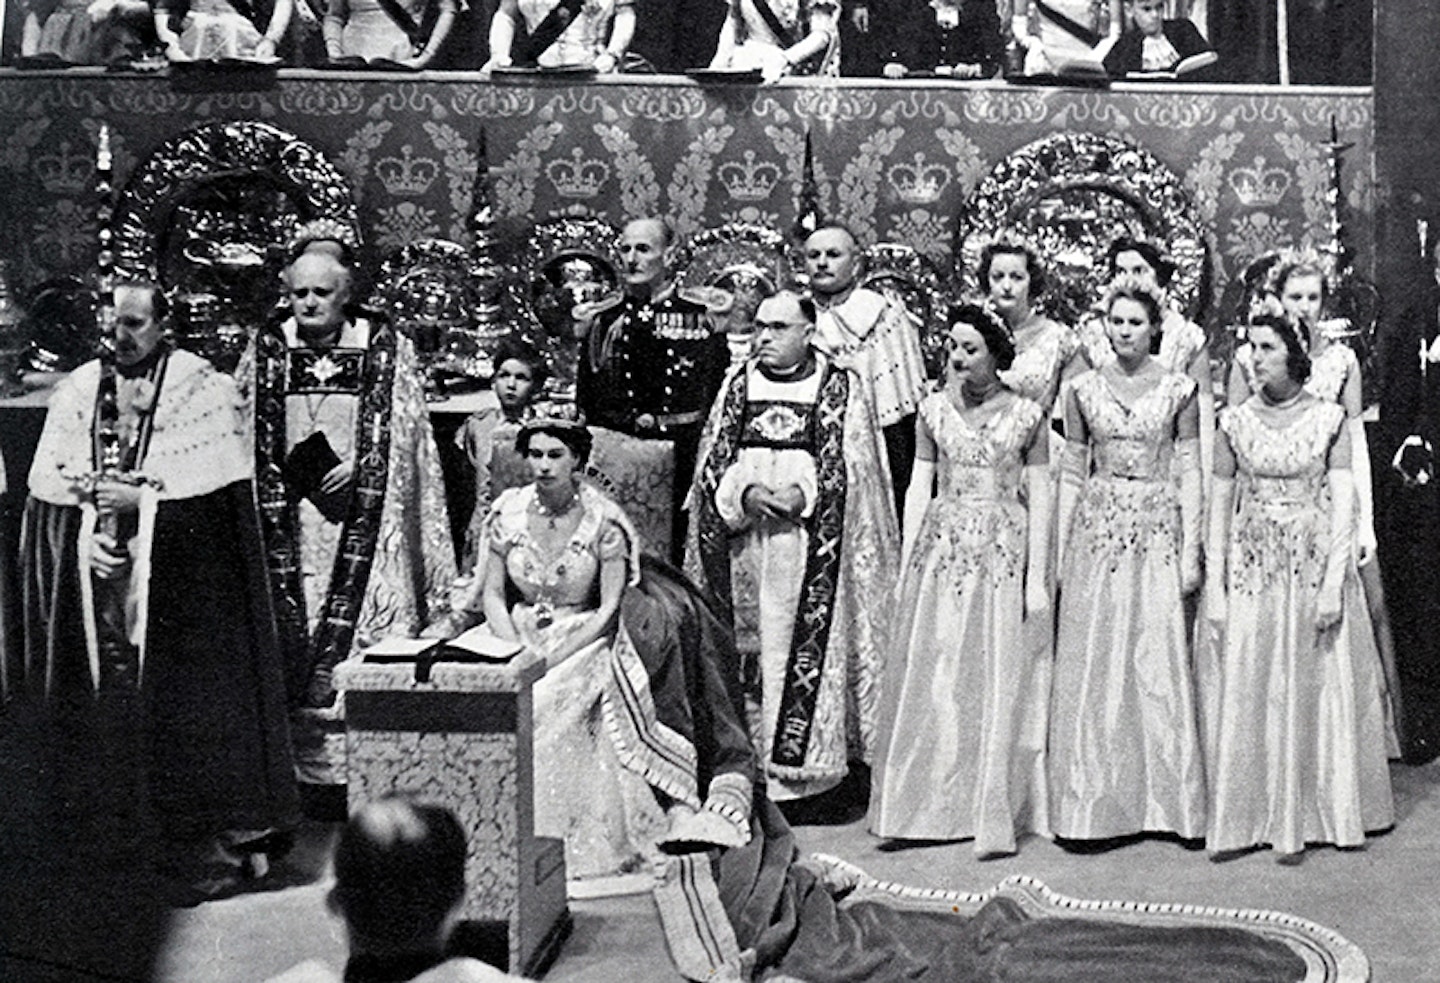 The Queenu2019s Coronation, 1953